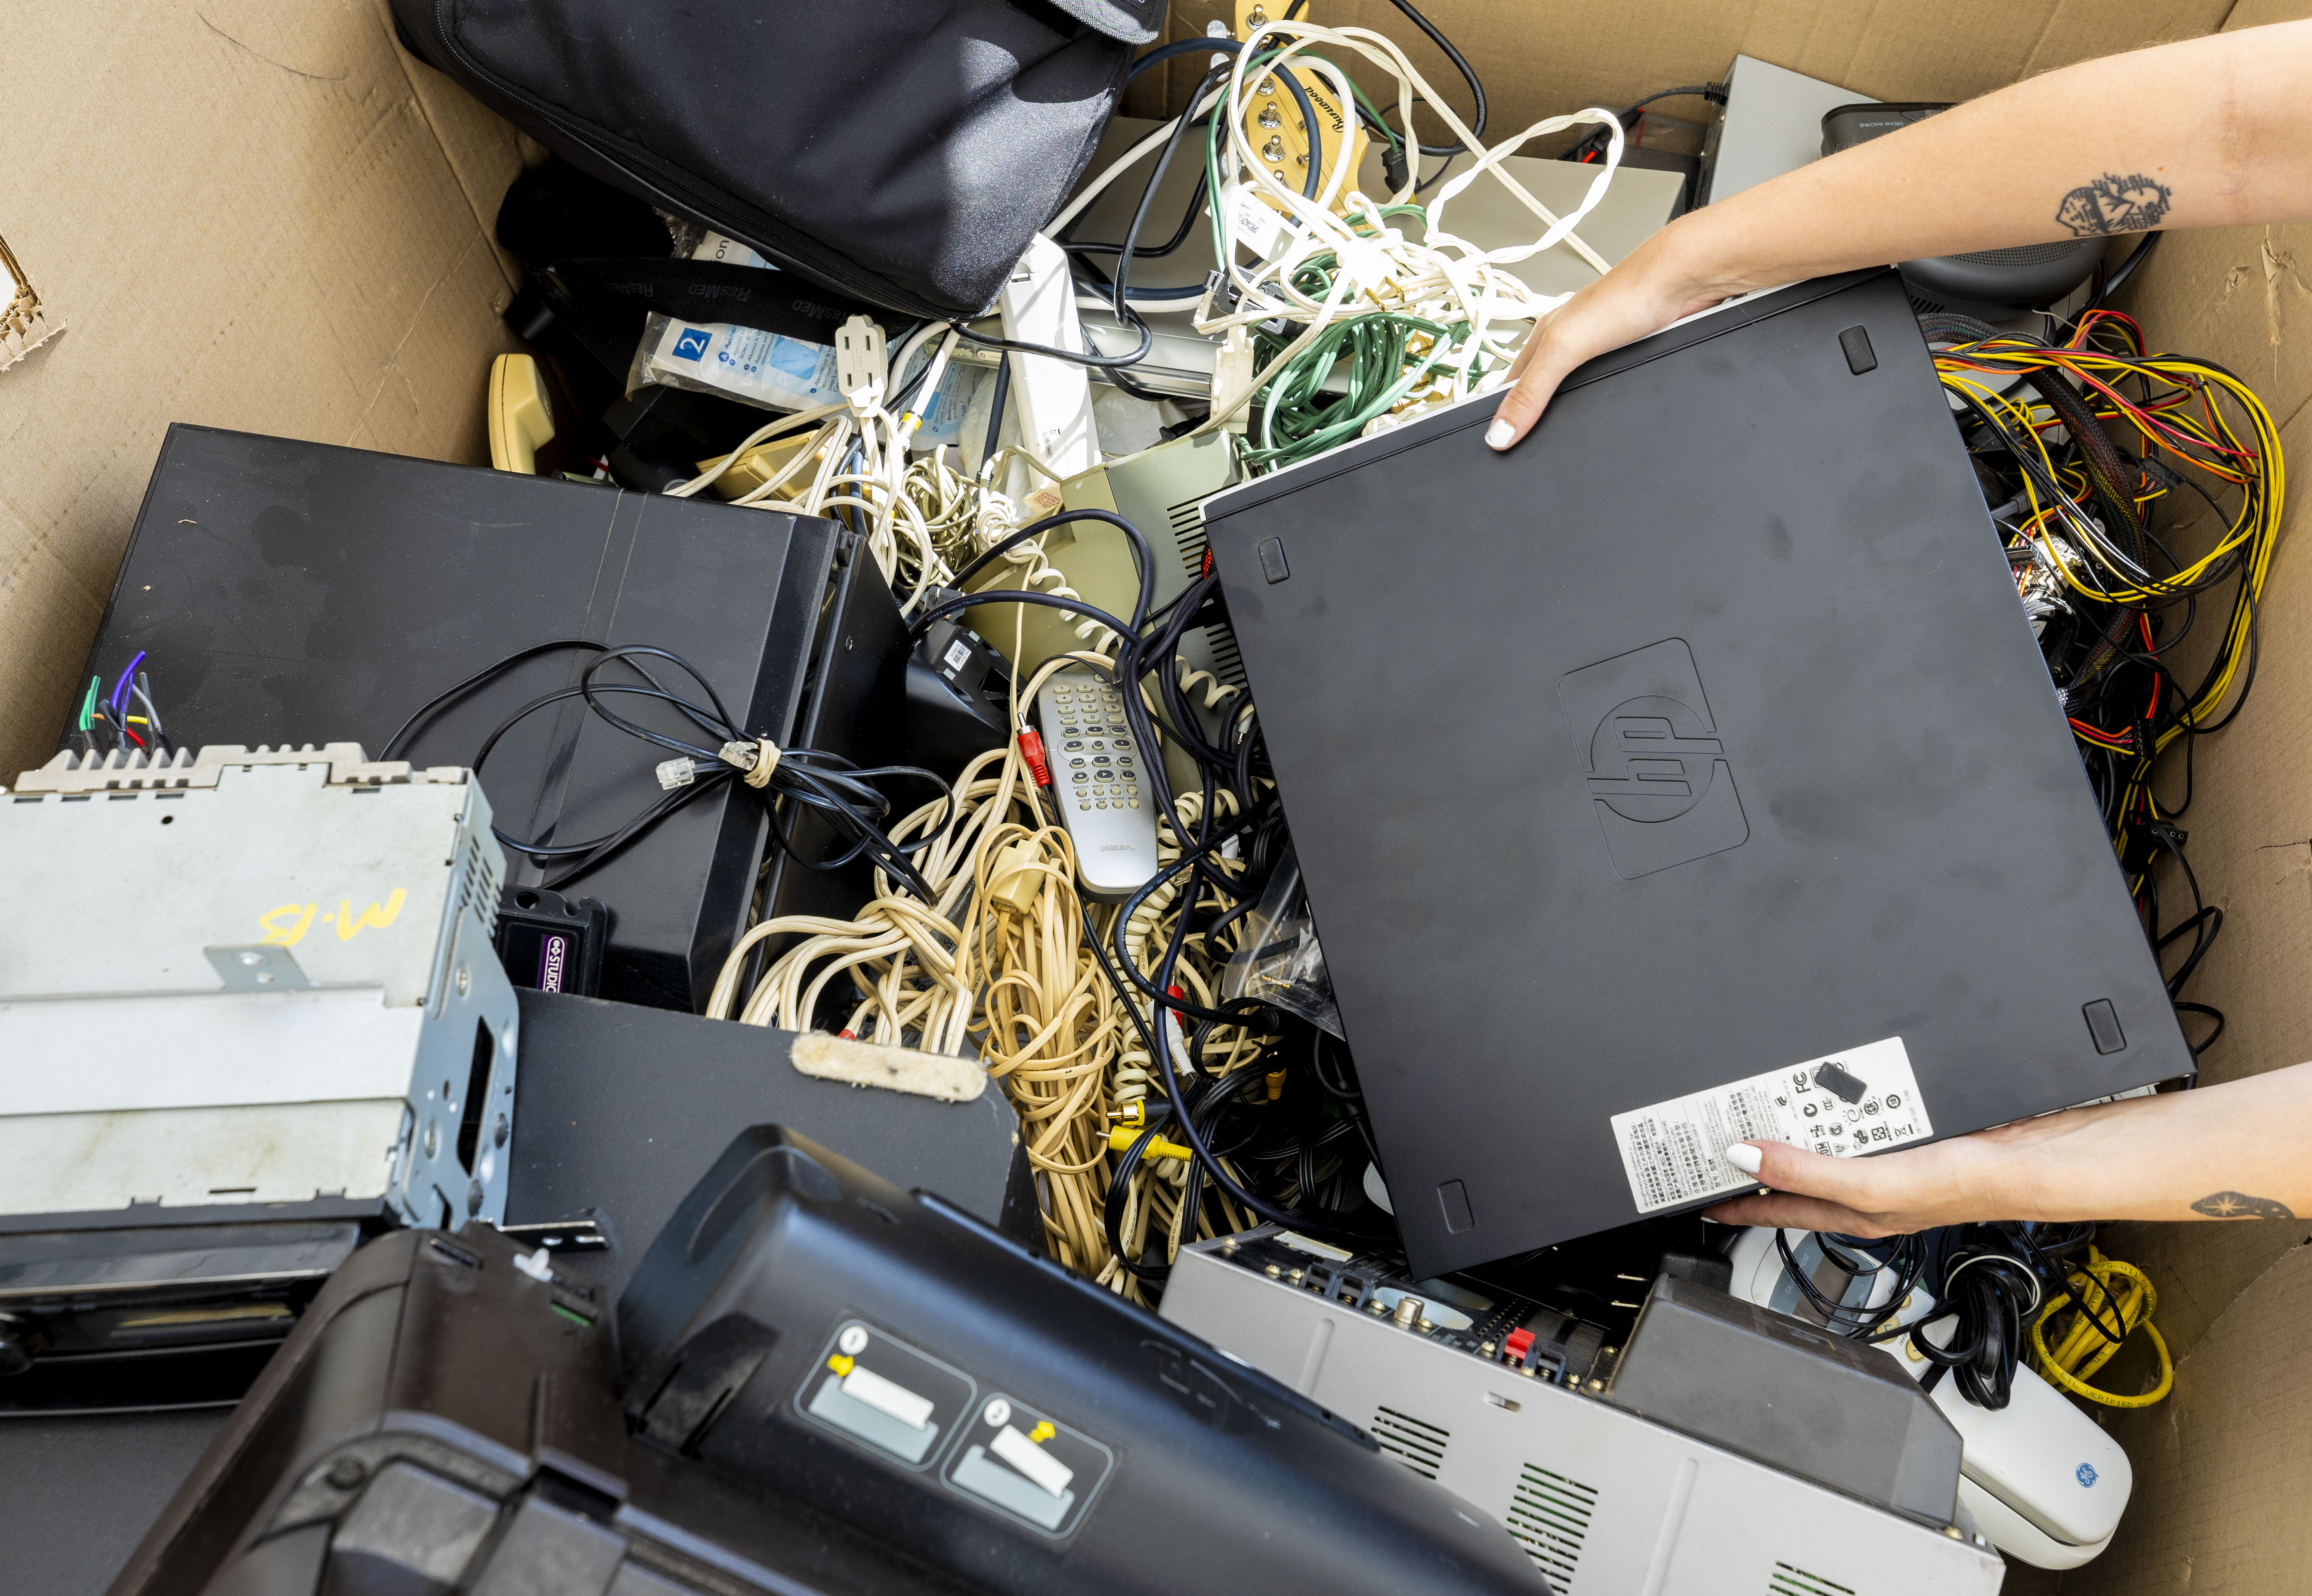  recyclage des objets électroniques